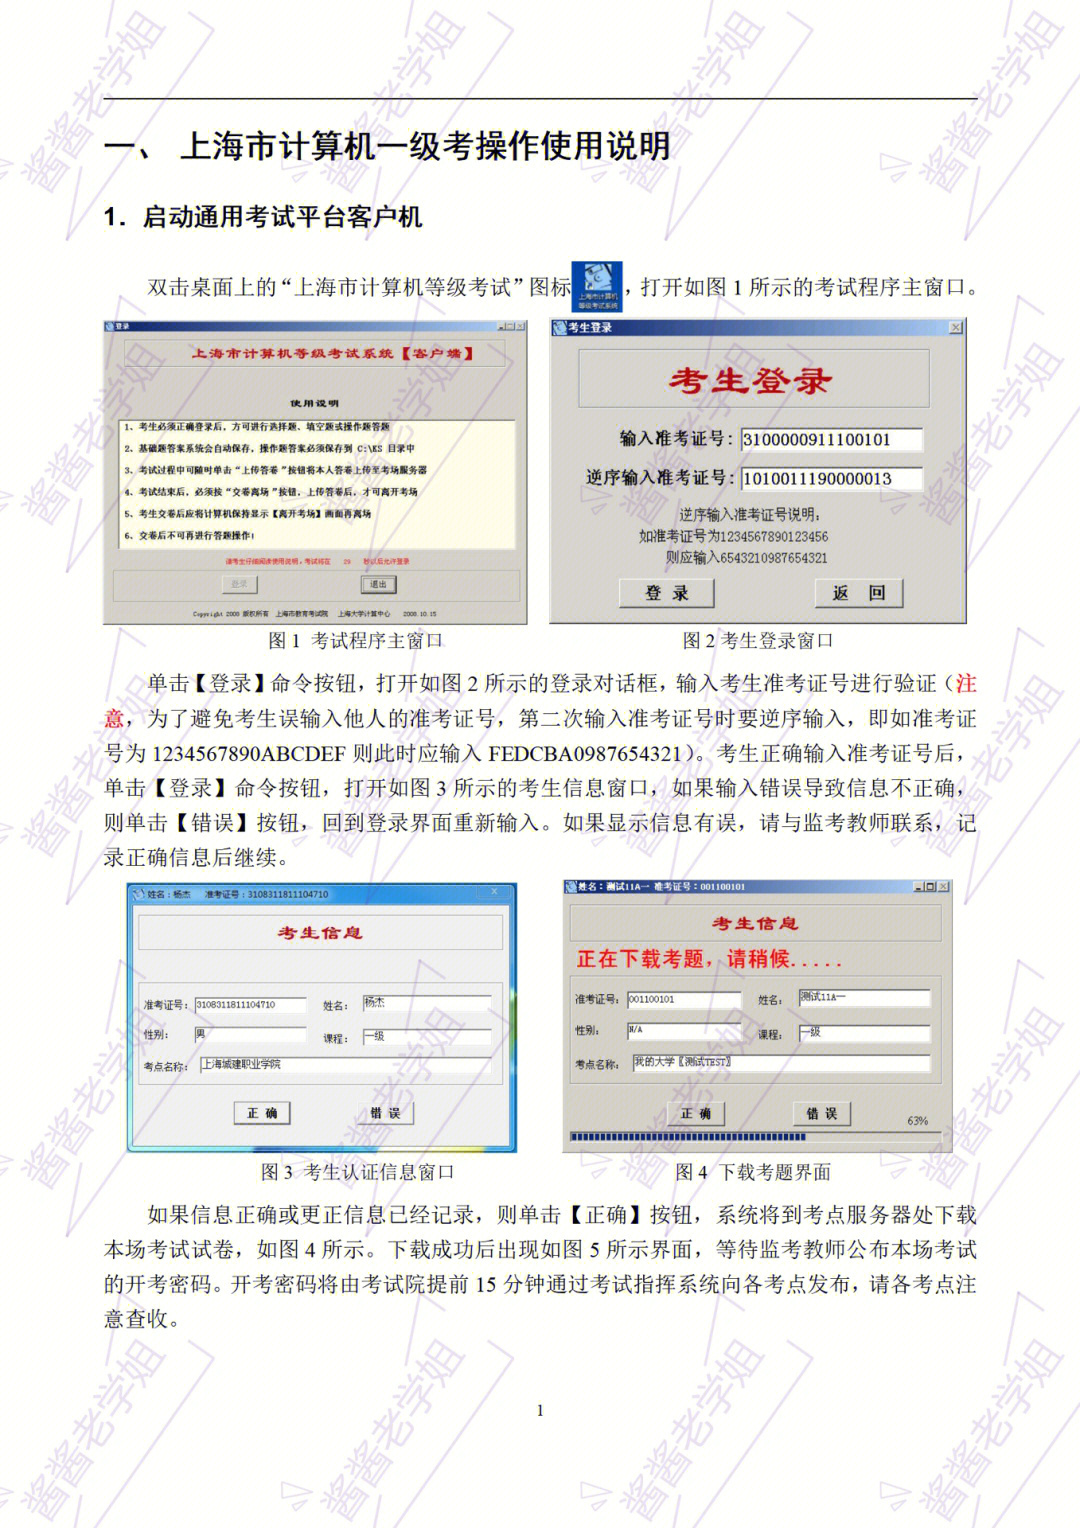 上海市计算机一级考试操作说明